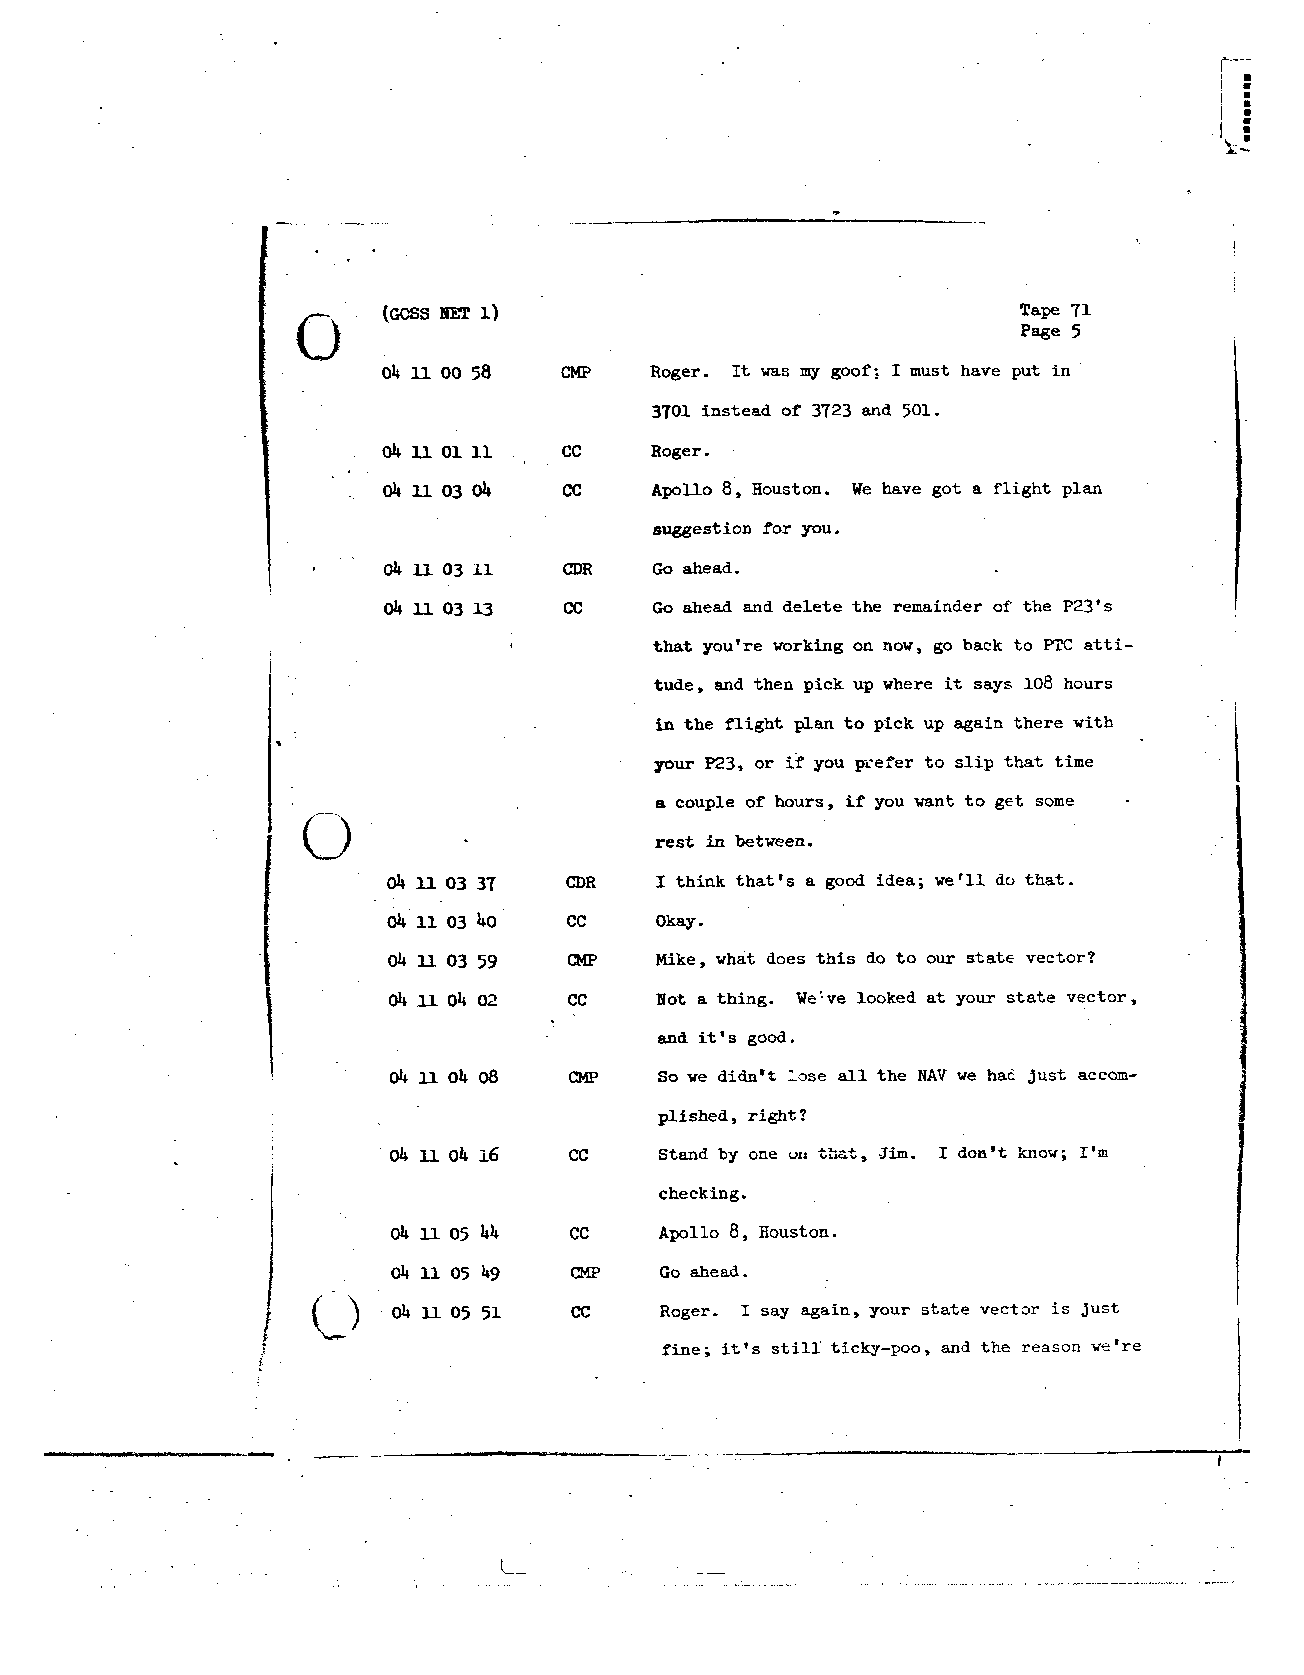 Page 568 of Apollo 8’s original transcript